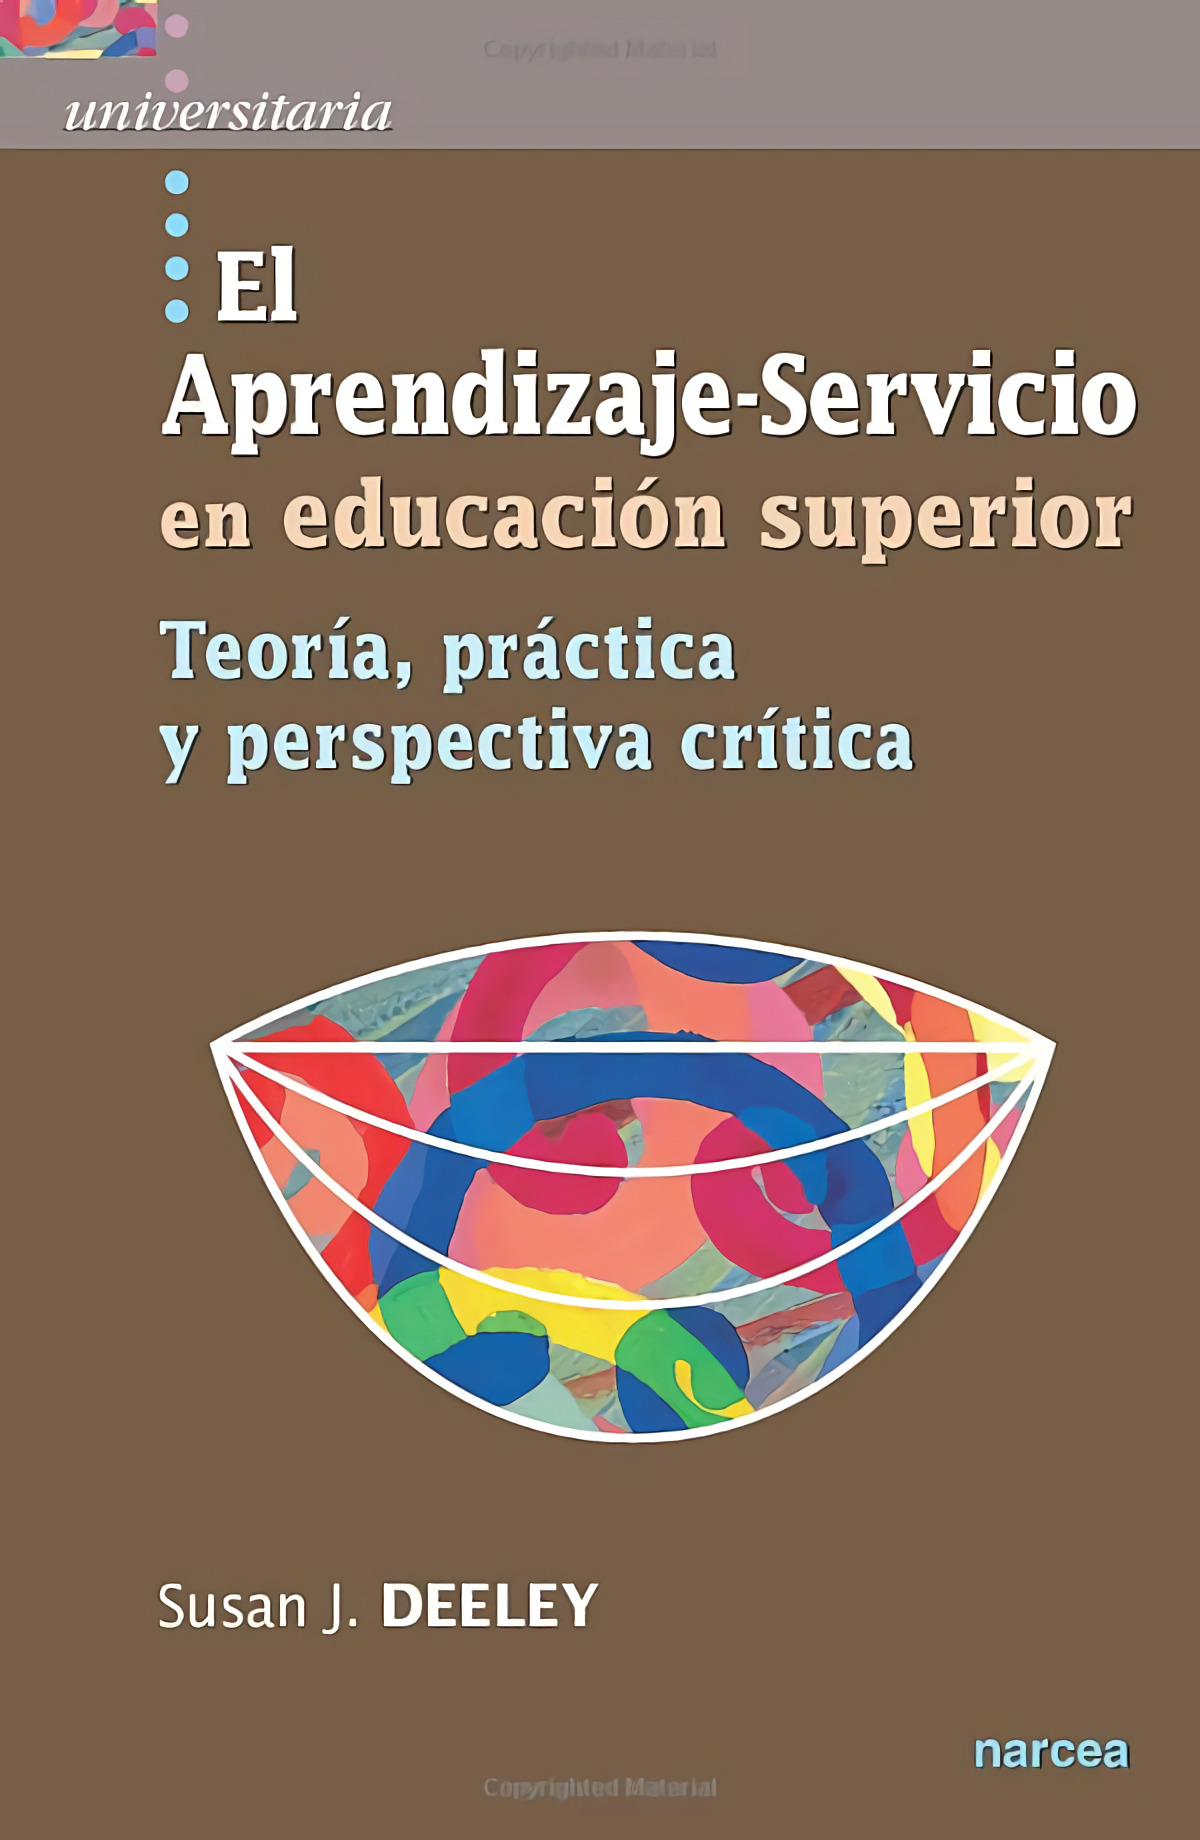 Aprendizaje-servicio educacion superior teoria, practica y perspectiva critica - Deeley, Susan J.